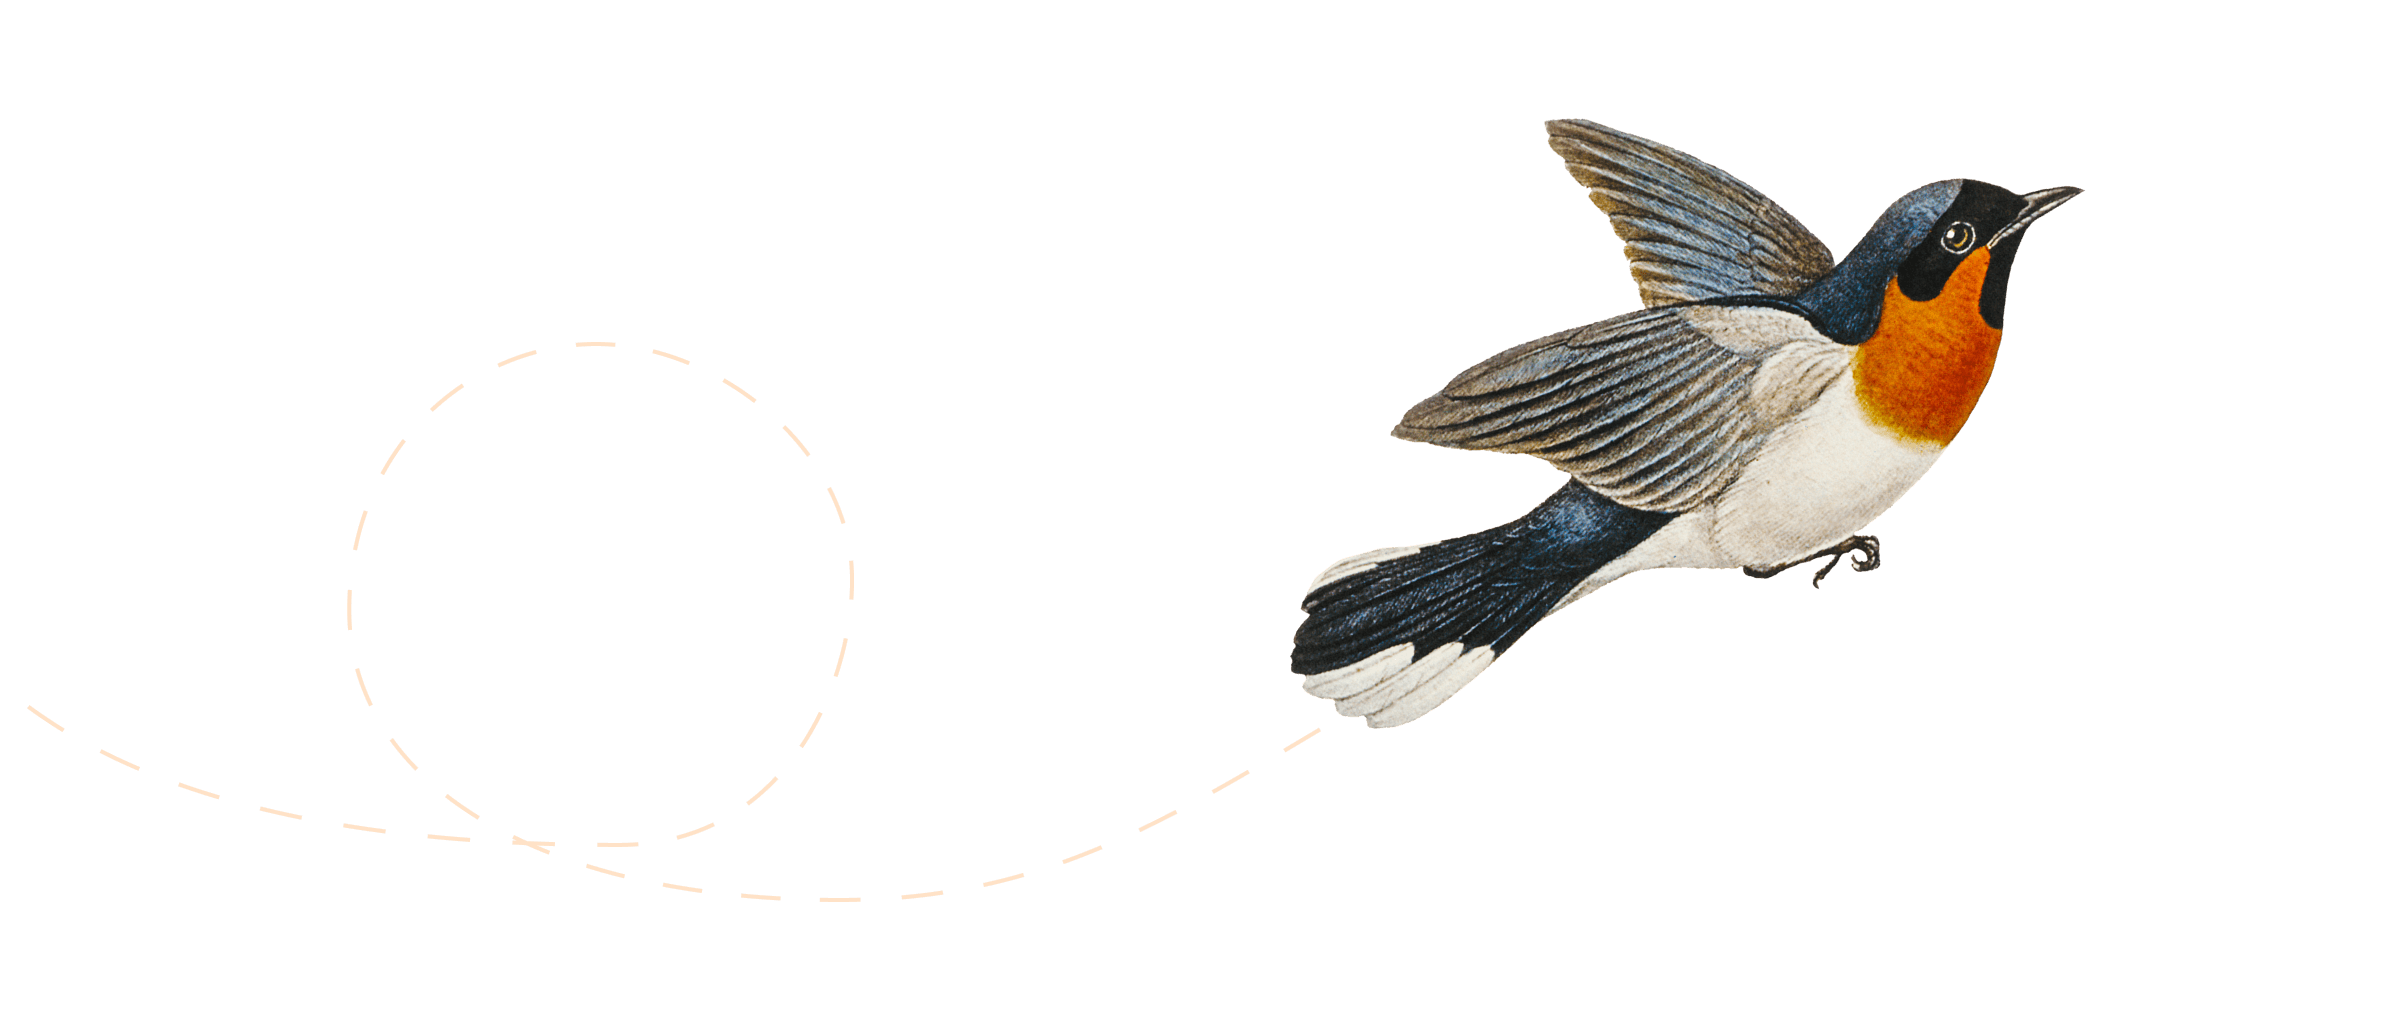 Ilustracja przedstawiająca ptaka w locie.